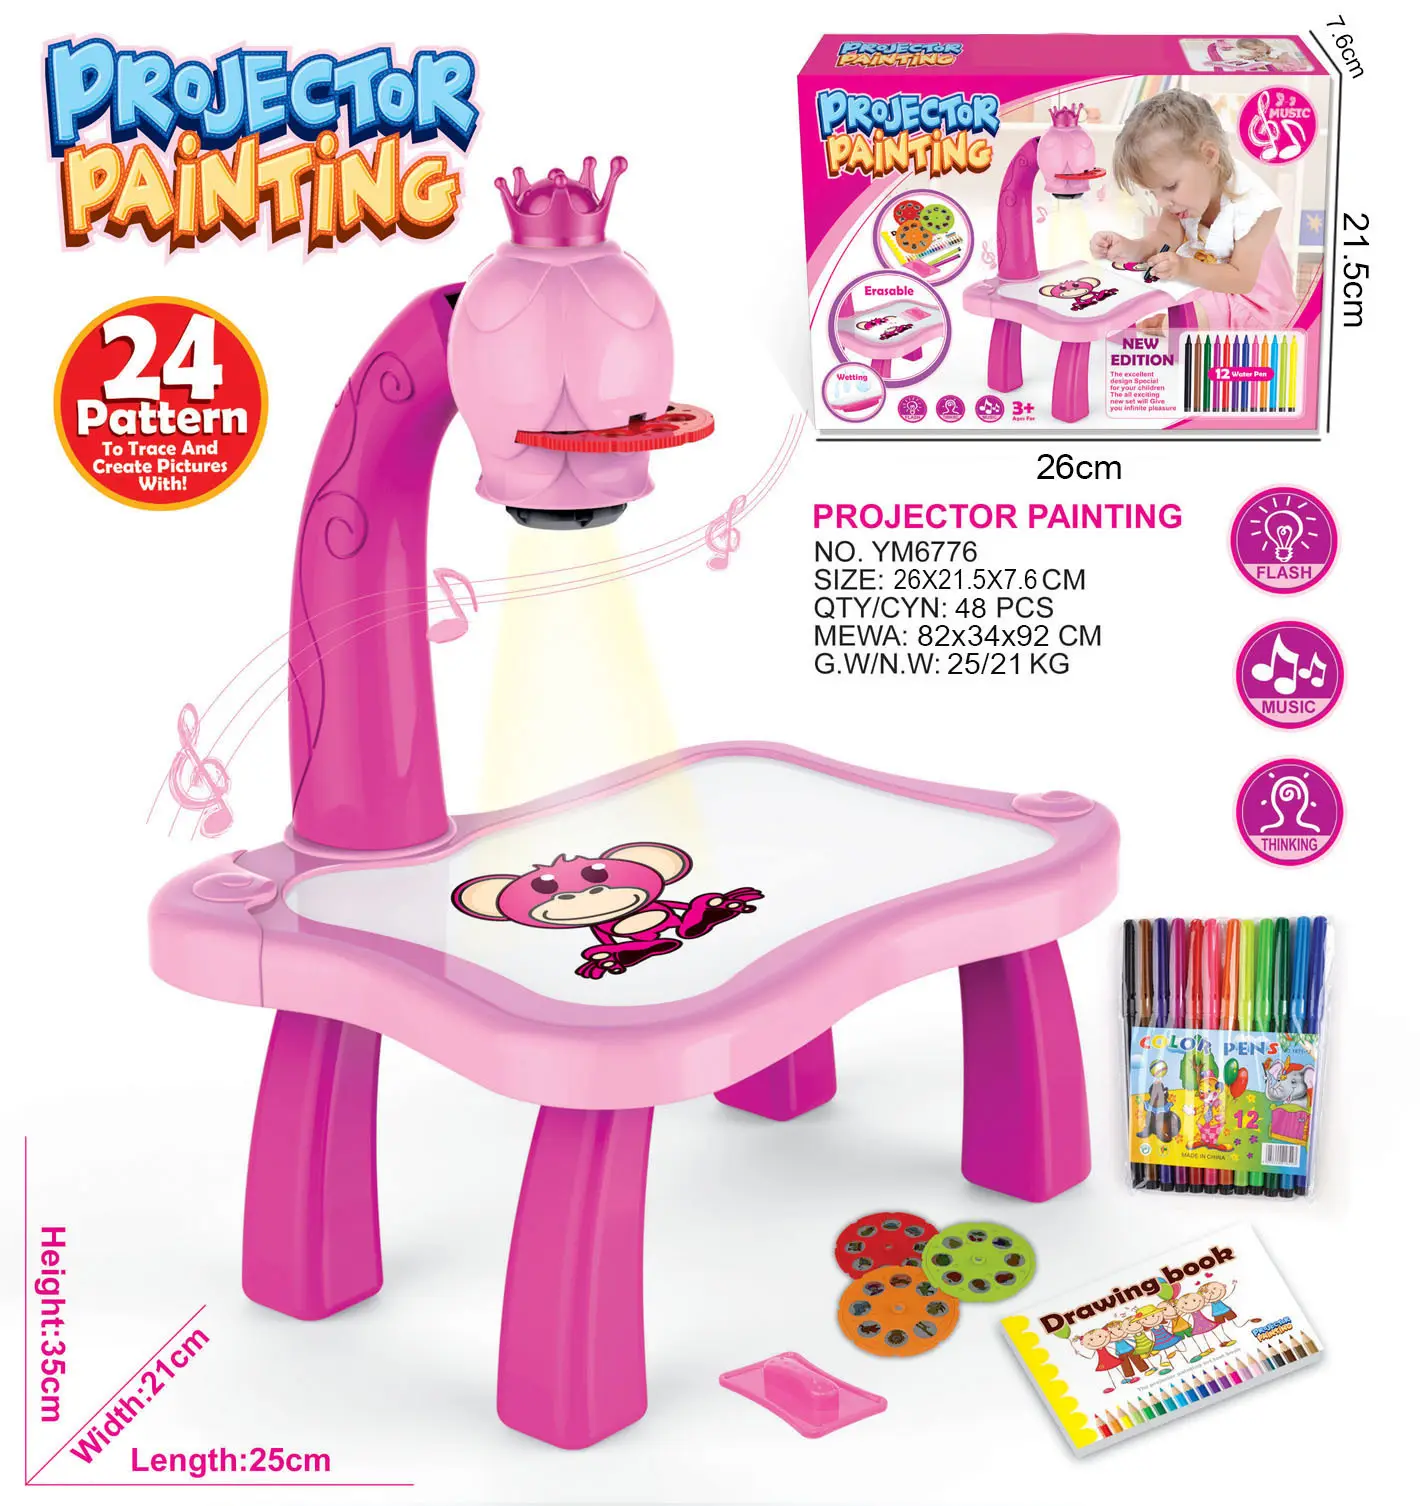 Amazon vendita calda tavolo da disegno proiettore disegno giocattoli proiettore pittura bambini altri giocattoli e hobby